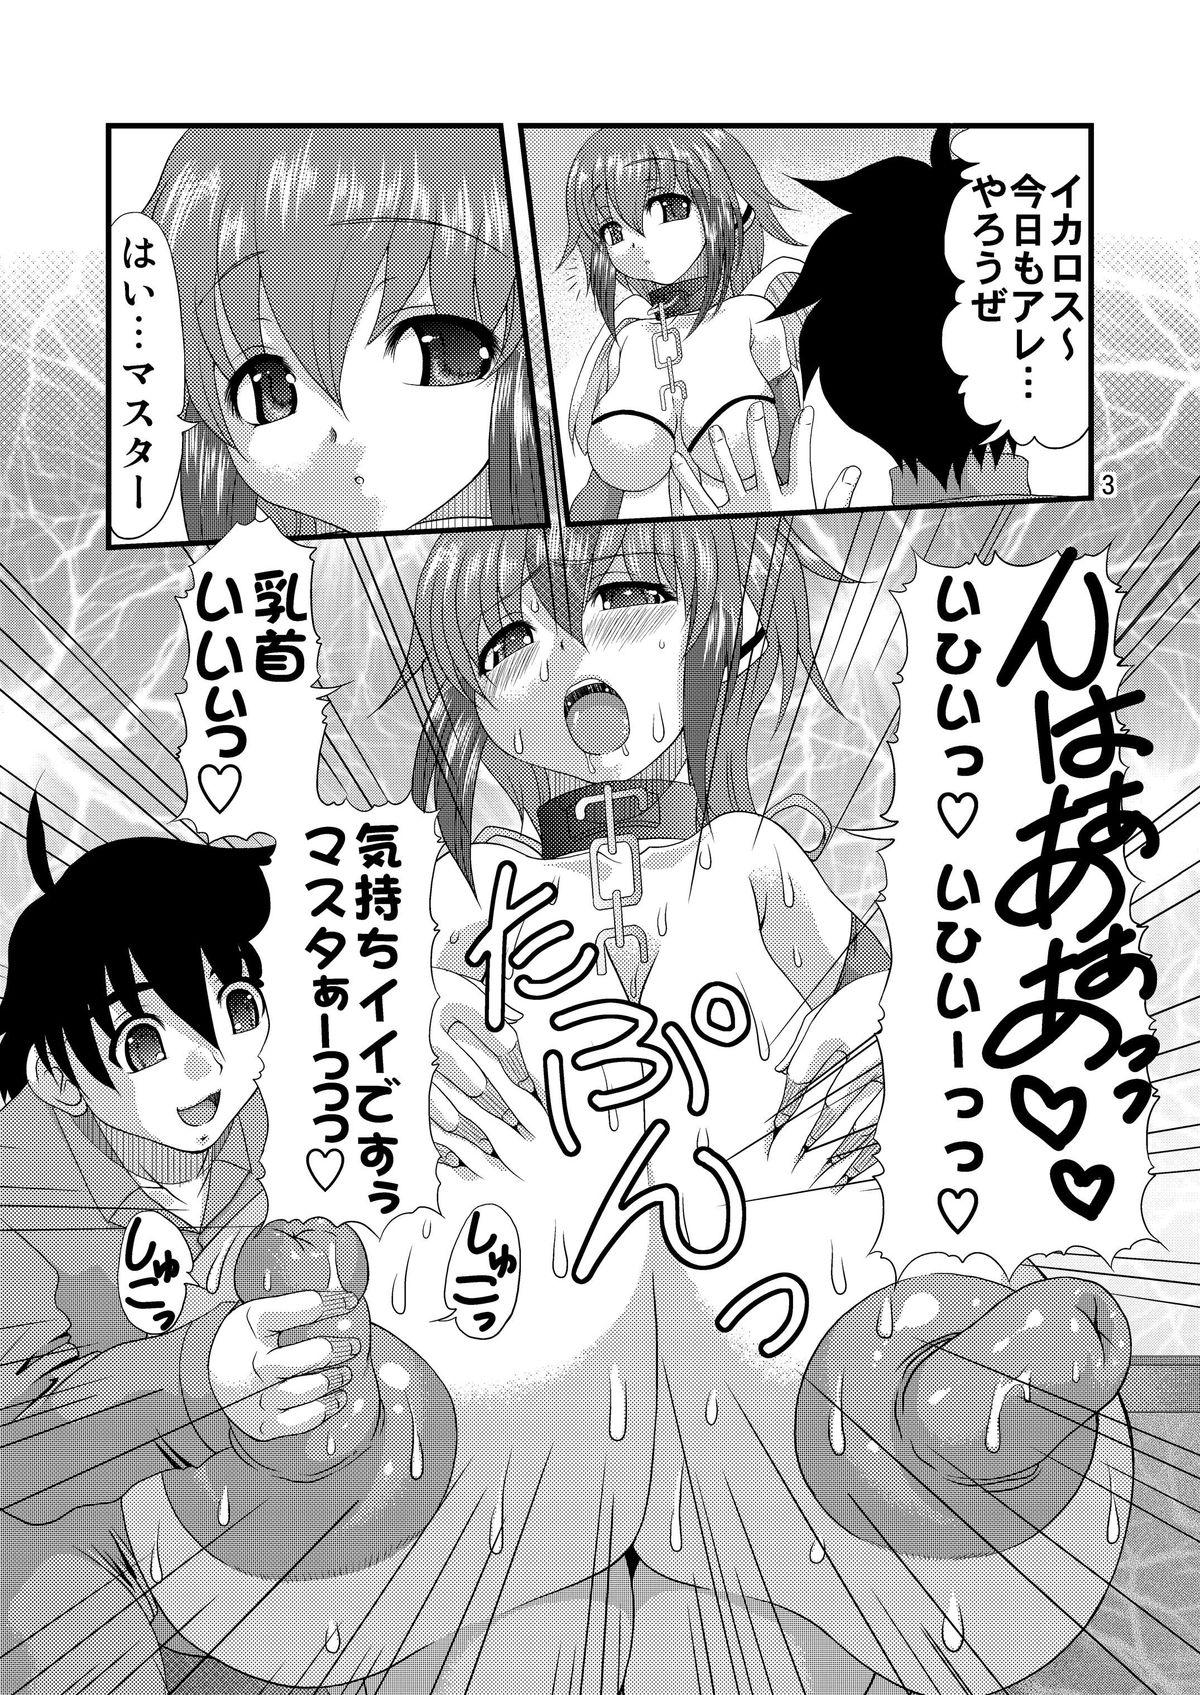 Long Chichi to Shiri to no Semegiai - Sora no otoshimono Fuck - Page 2